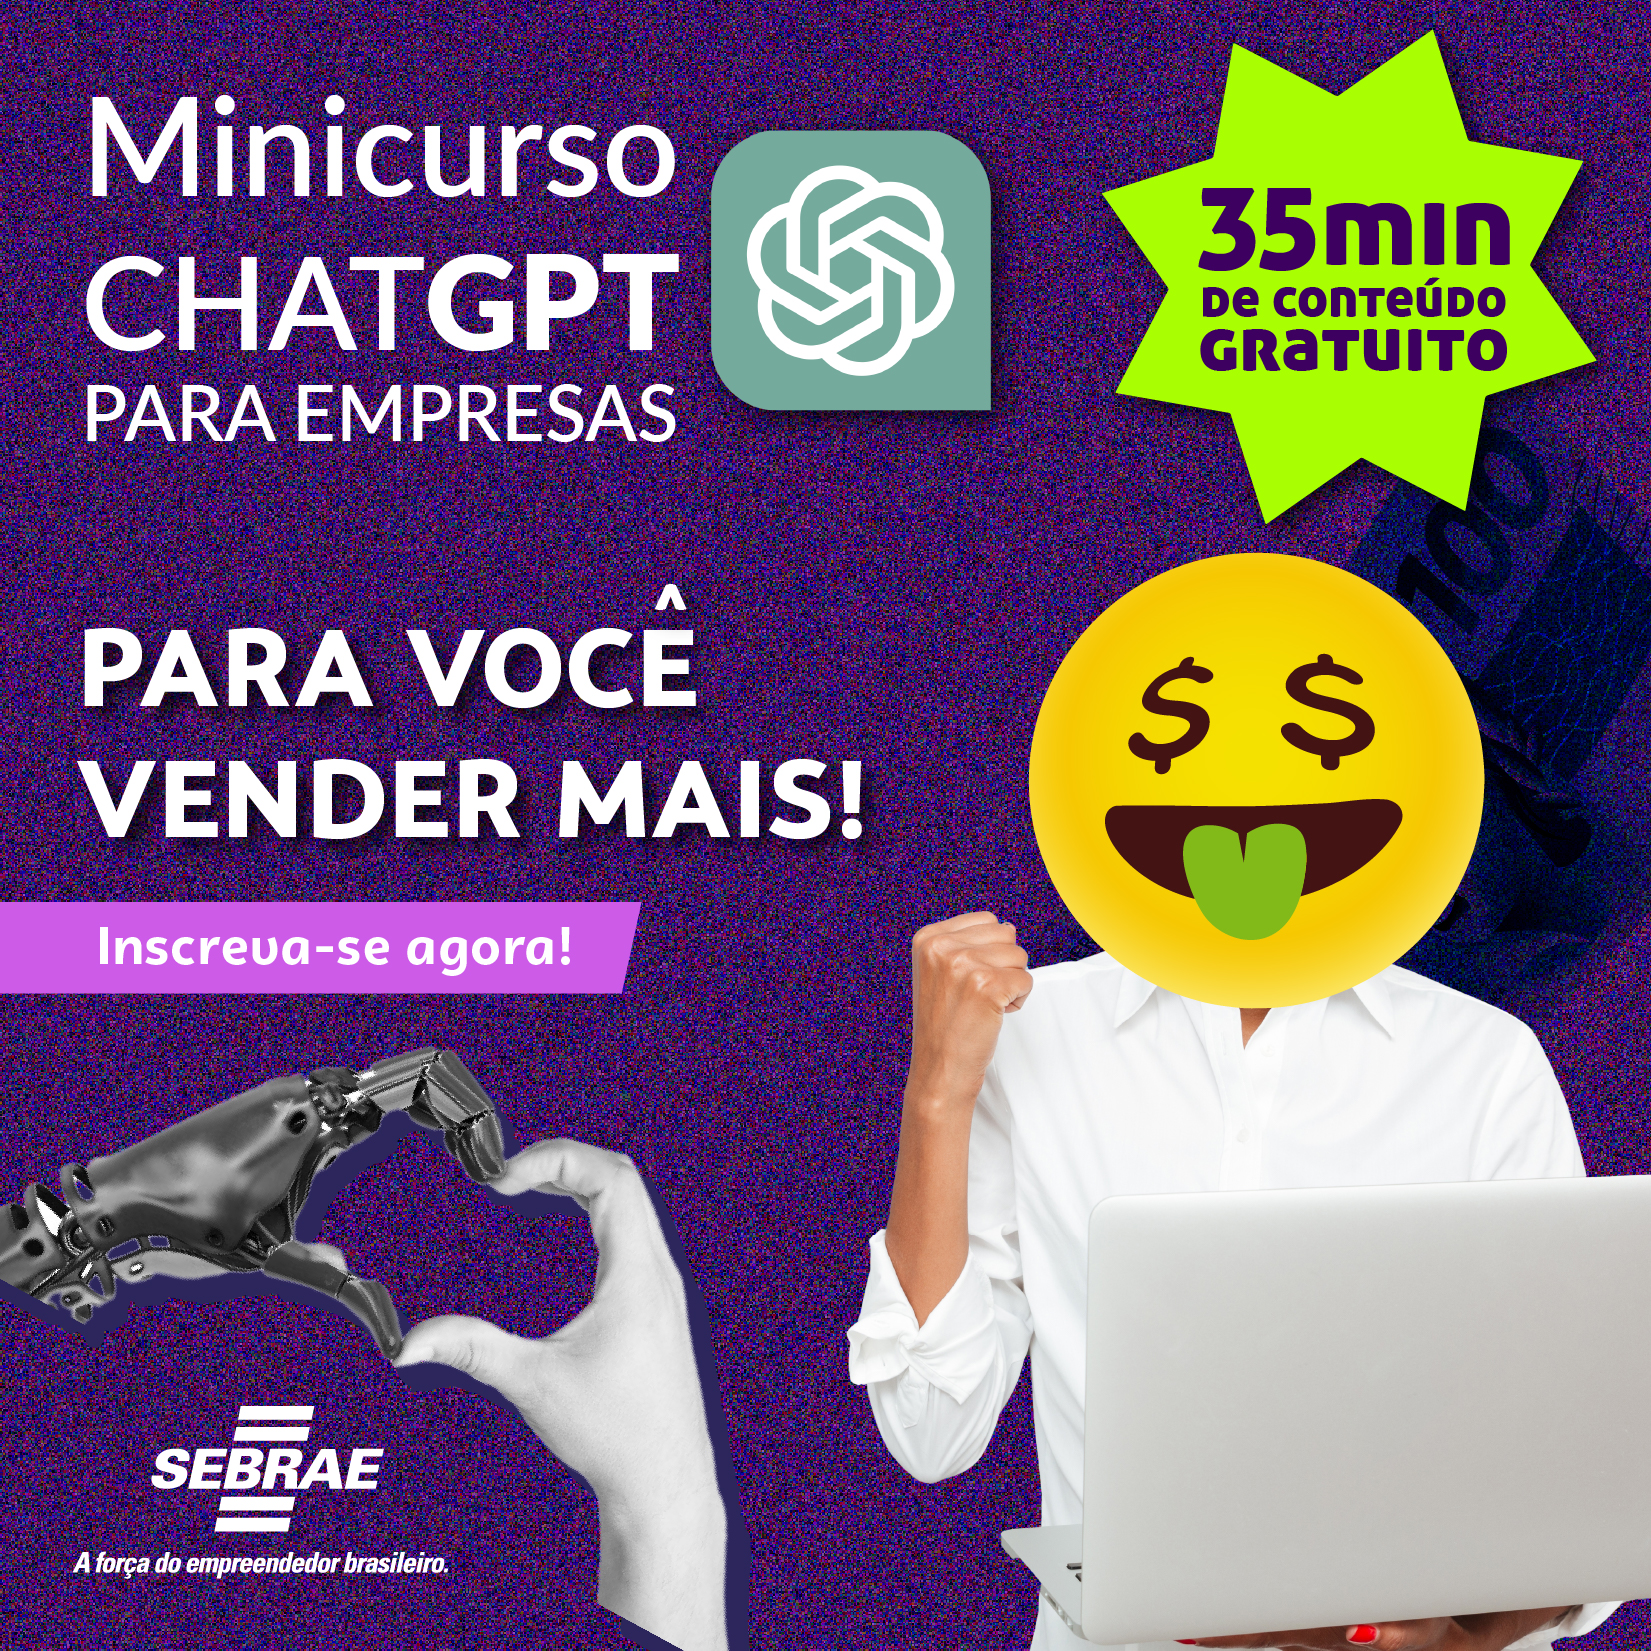 Minicurso ChatGPT 